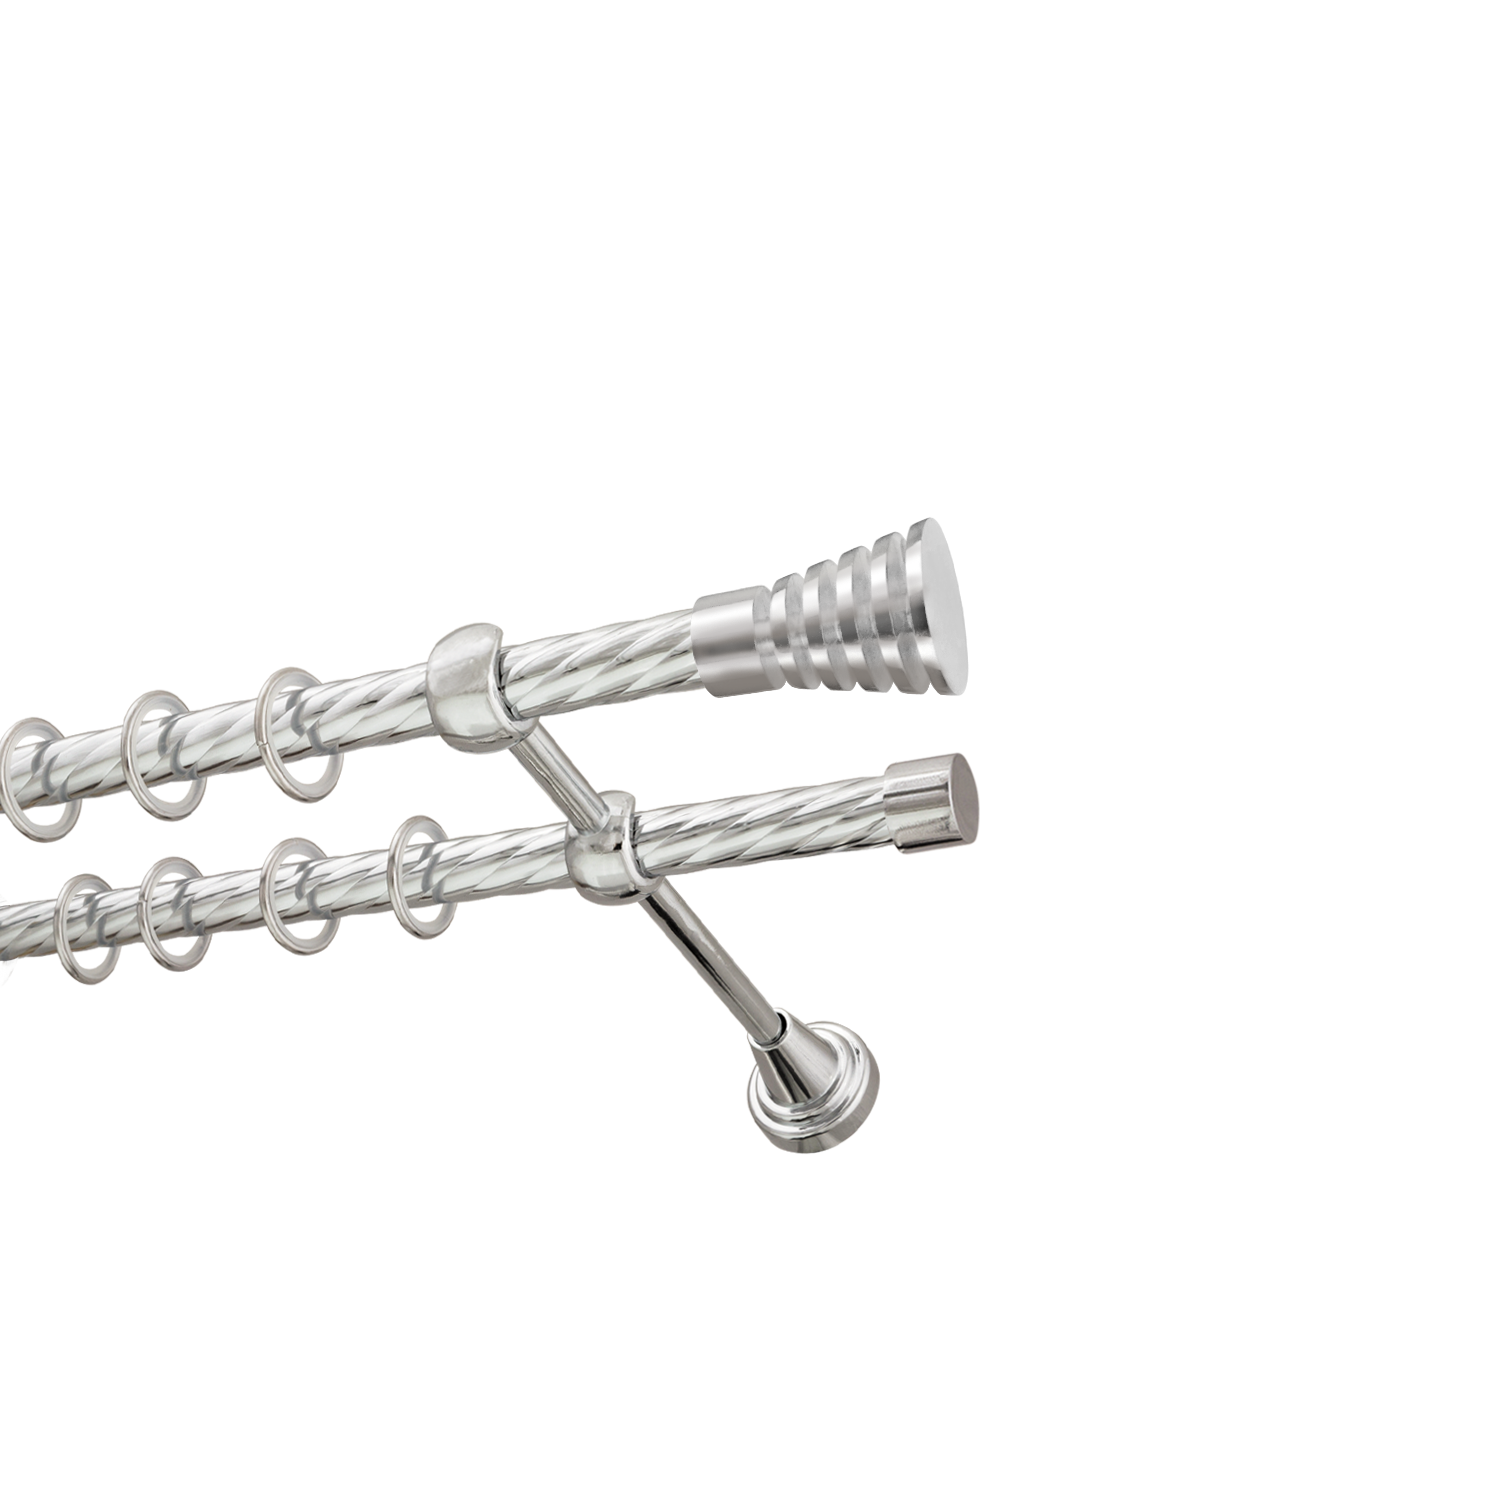 Металлический карниз для штор Верона, двухрядный 16/16 мм, серебро, витая штанга, длина 180 см - фото Wikidecor.ru